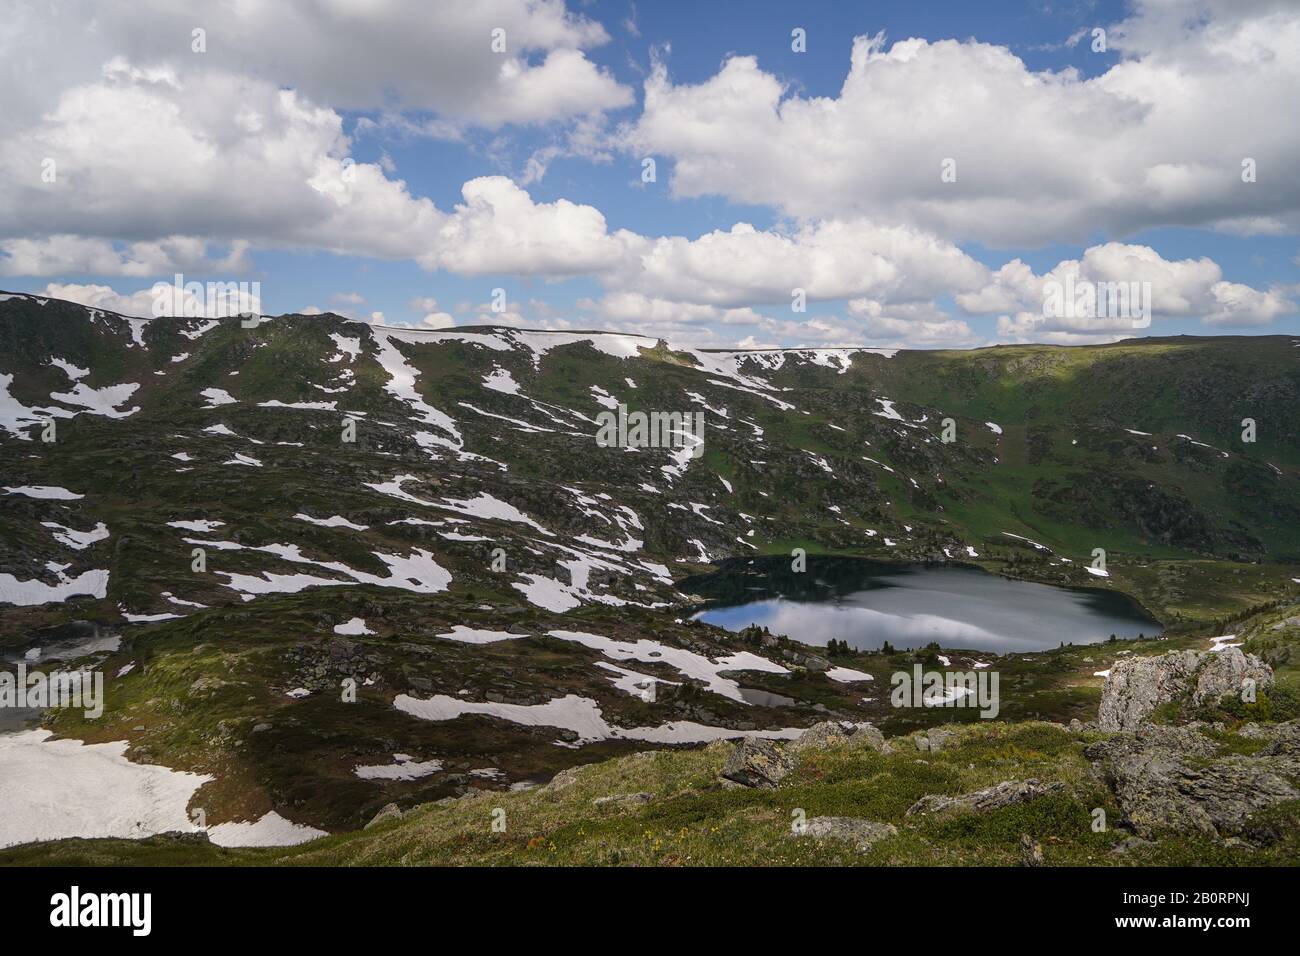 Piccolo lago nella valle di montagna e piccole banche di neve che vi circondano Foto Stock